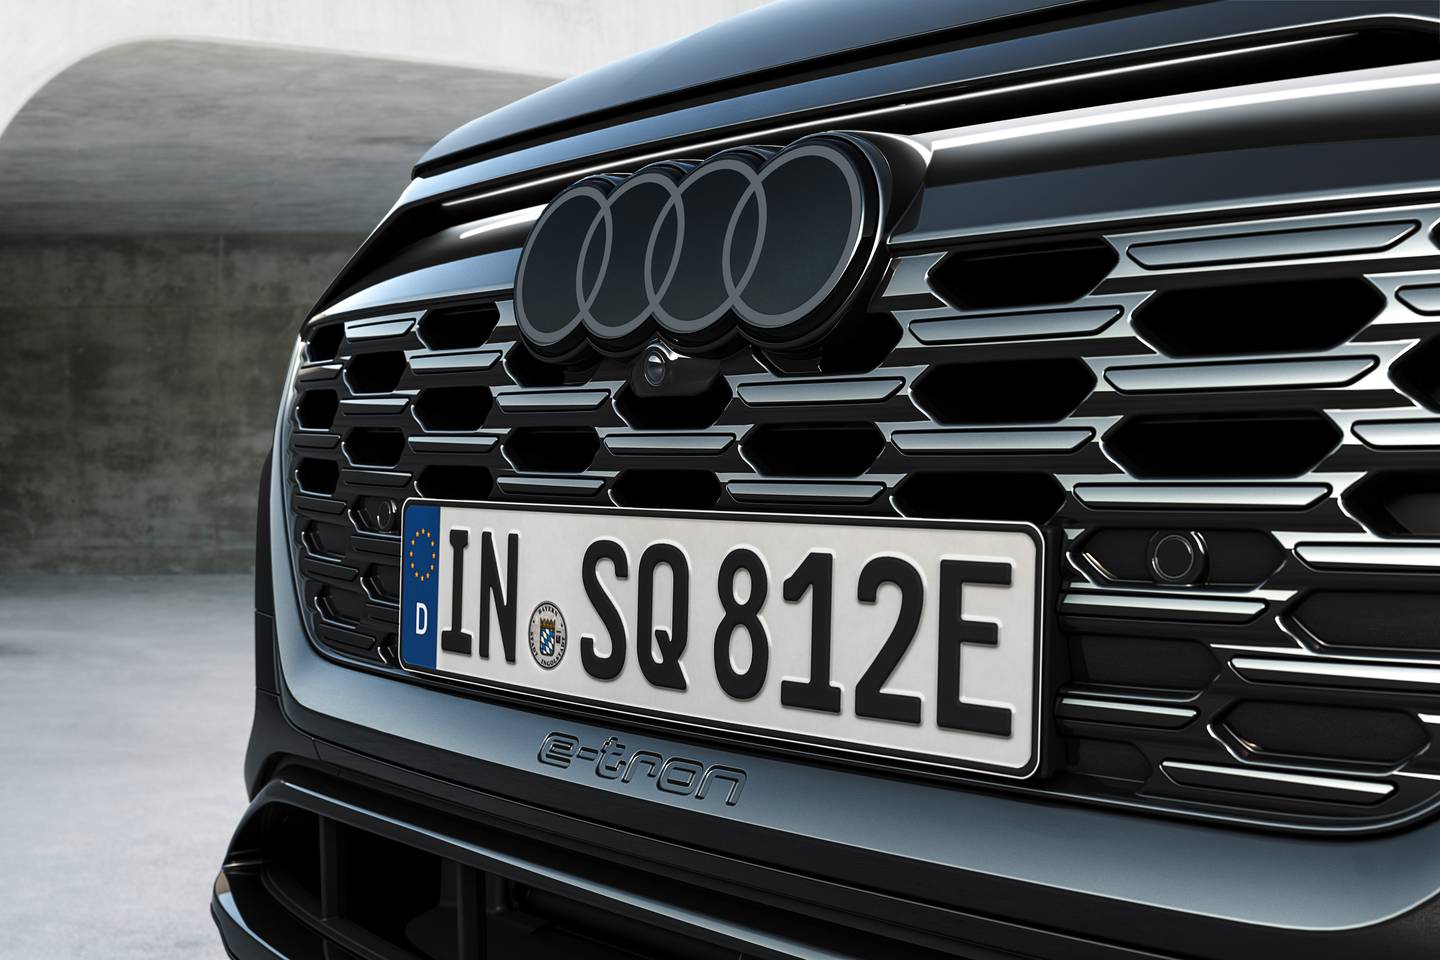 New Audi A4 teaser image